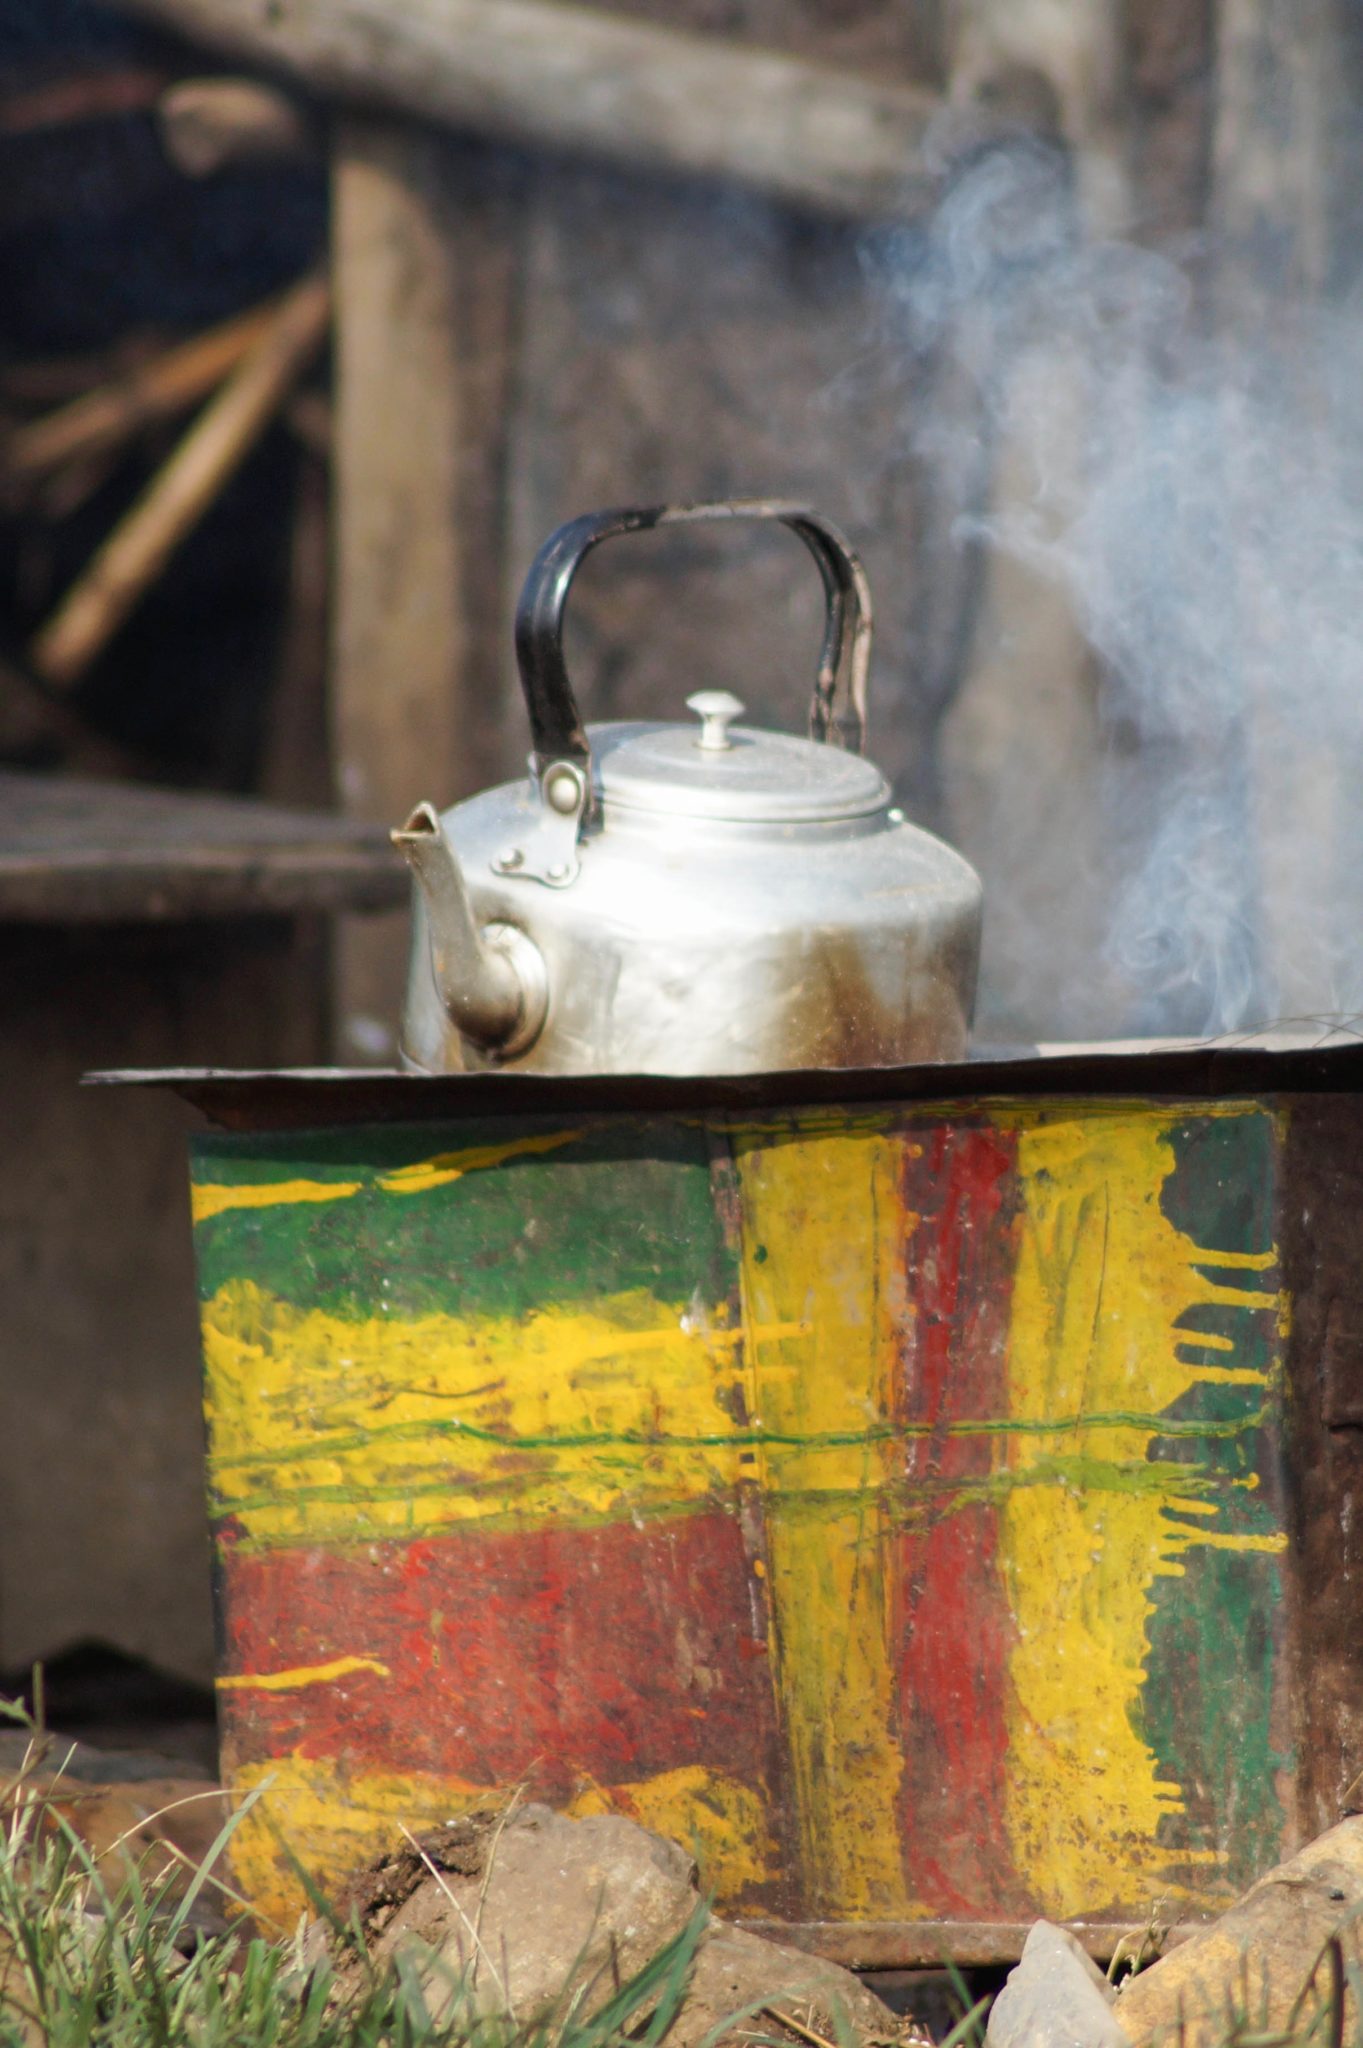 Kaffee ist das wichtigste im Alltag der Äthiopier.